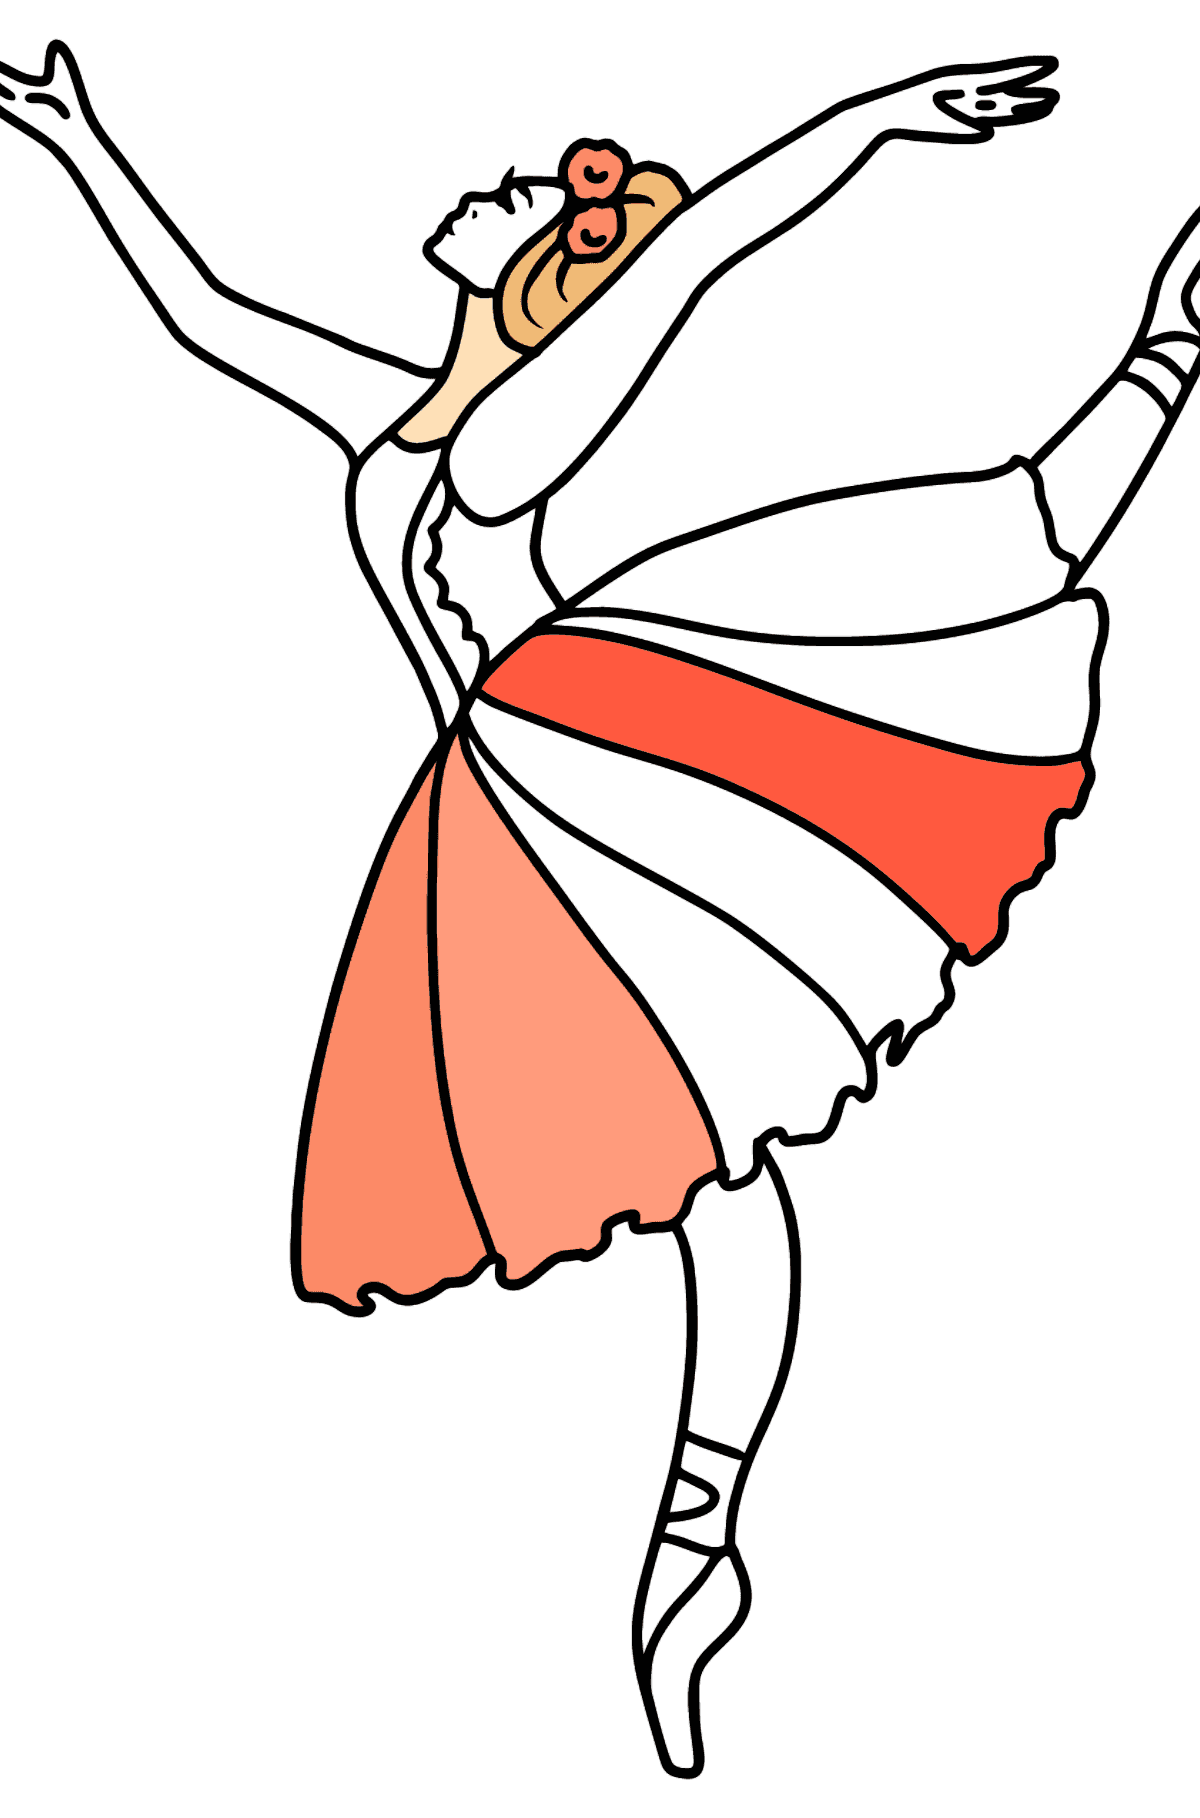 Vakker ballerina tegning til fargelegging - Tegninger til fargelegging for barn